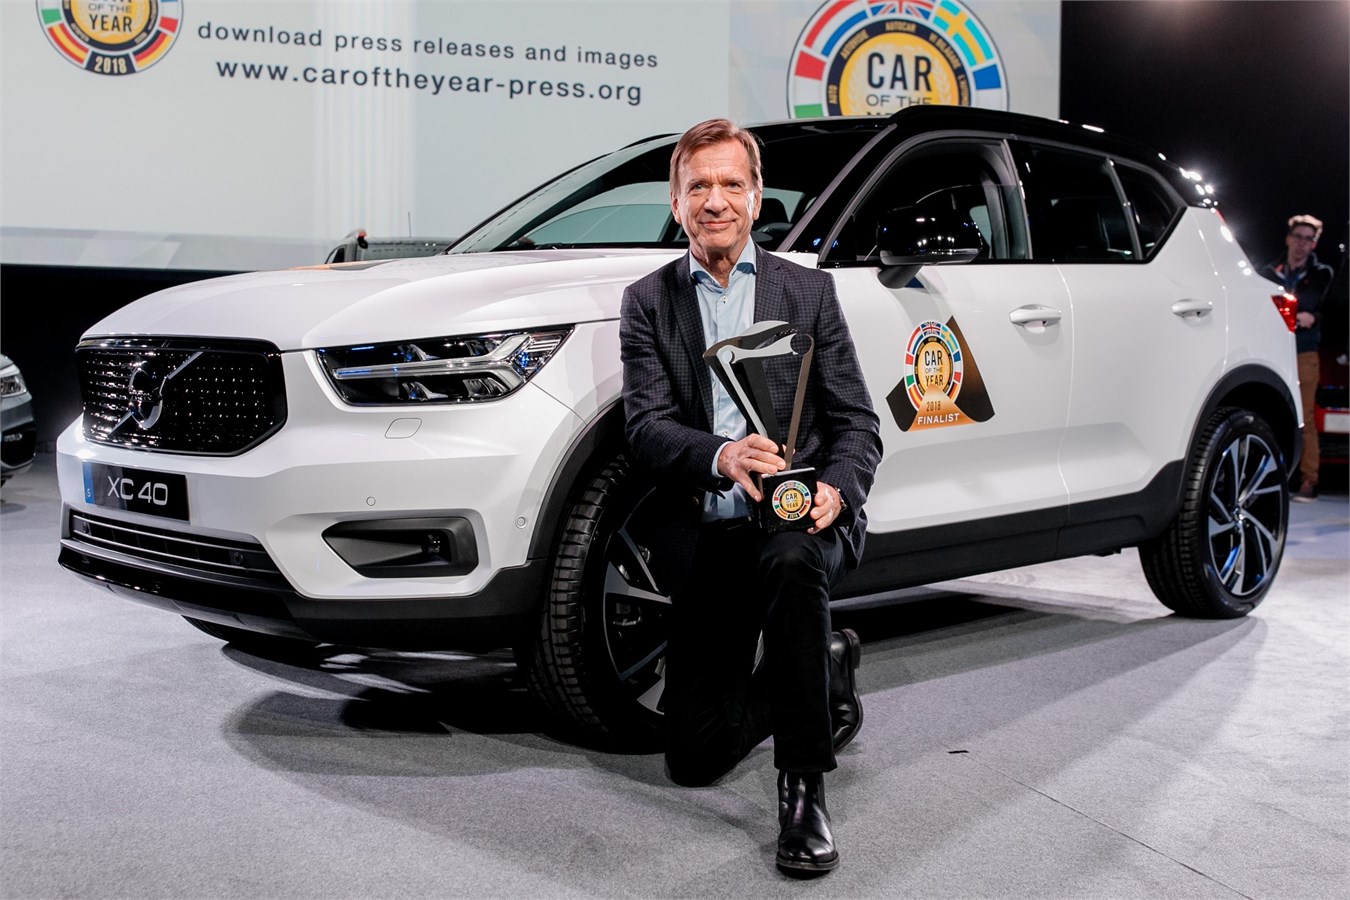 Håkan Samuelsson, Präsident und CEO von Volvo Cars, bei der "Car of the Year"-Verleihung